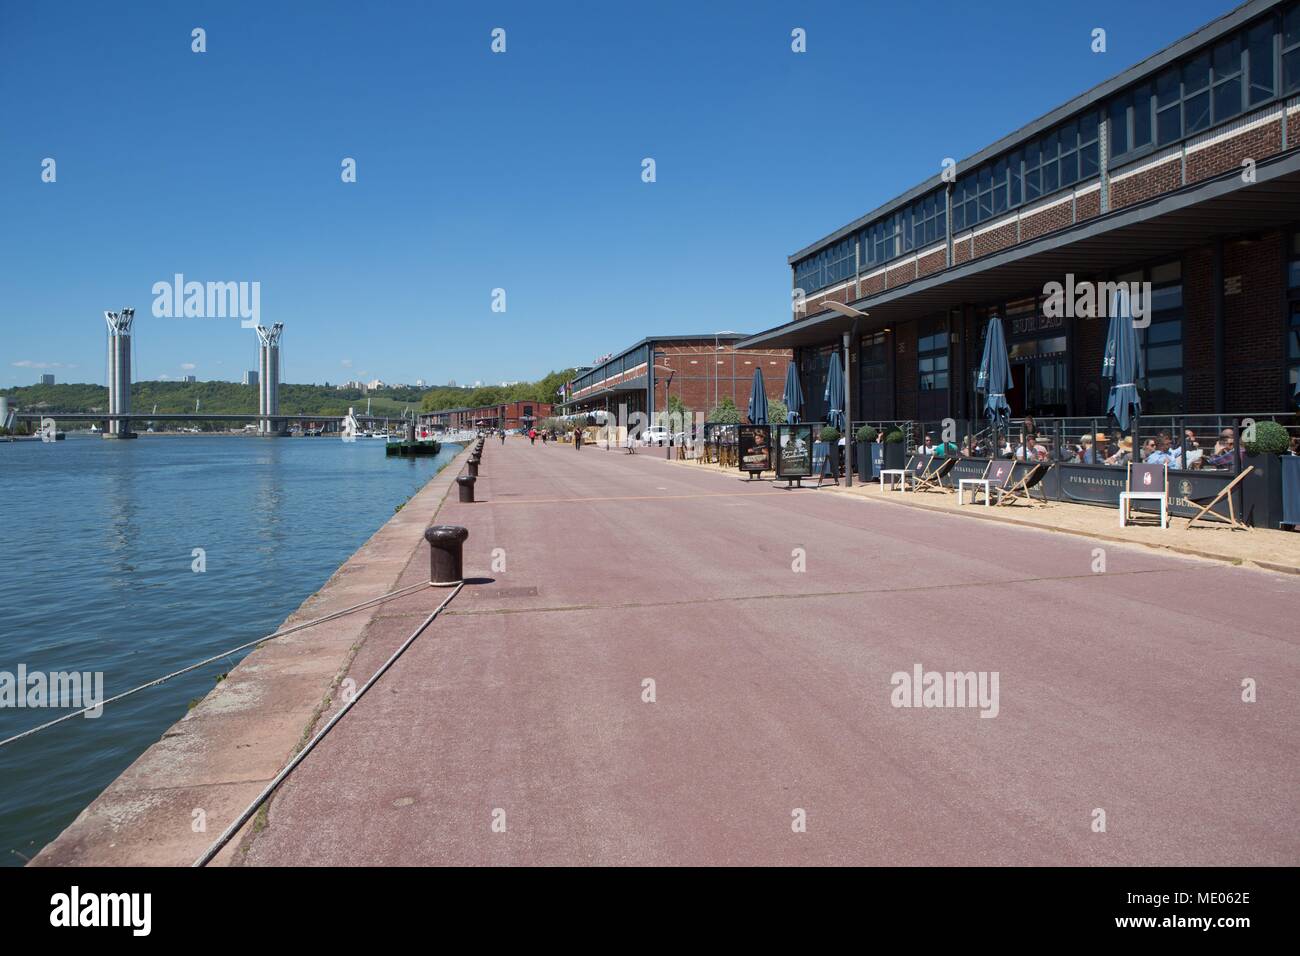 France, Rouen, quai, Promenade, quais, ancien Normandie-Niemen docks restaurés, des terrasses de restaurants, Pont Flaubert Banque D'Images